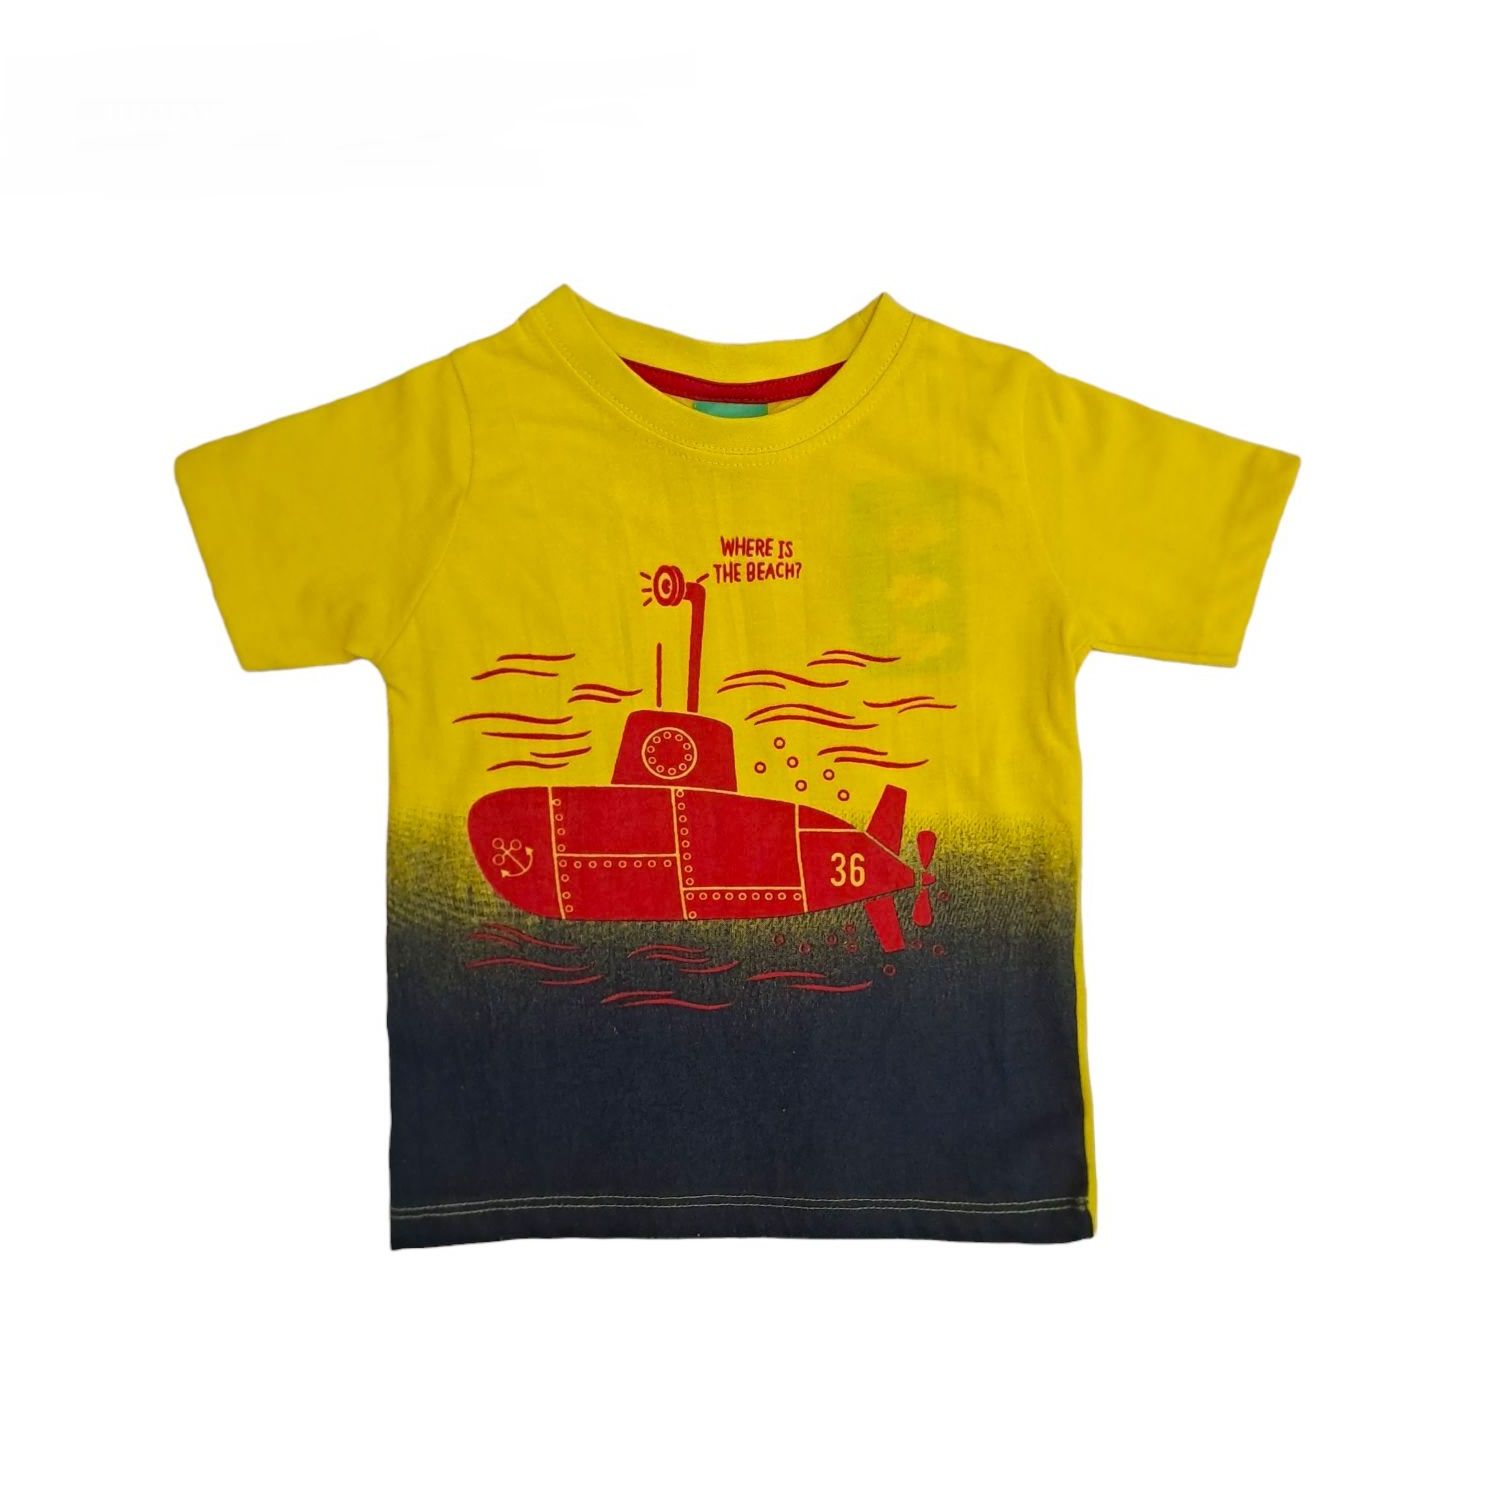 تی شرت آستین کوتاه پسرانه پیریمارک مدل زیر دریایی -  - 1